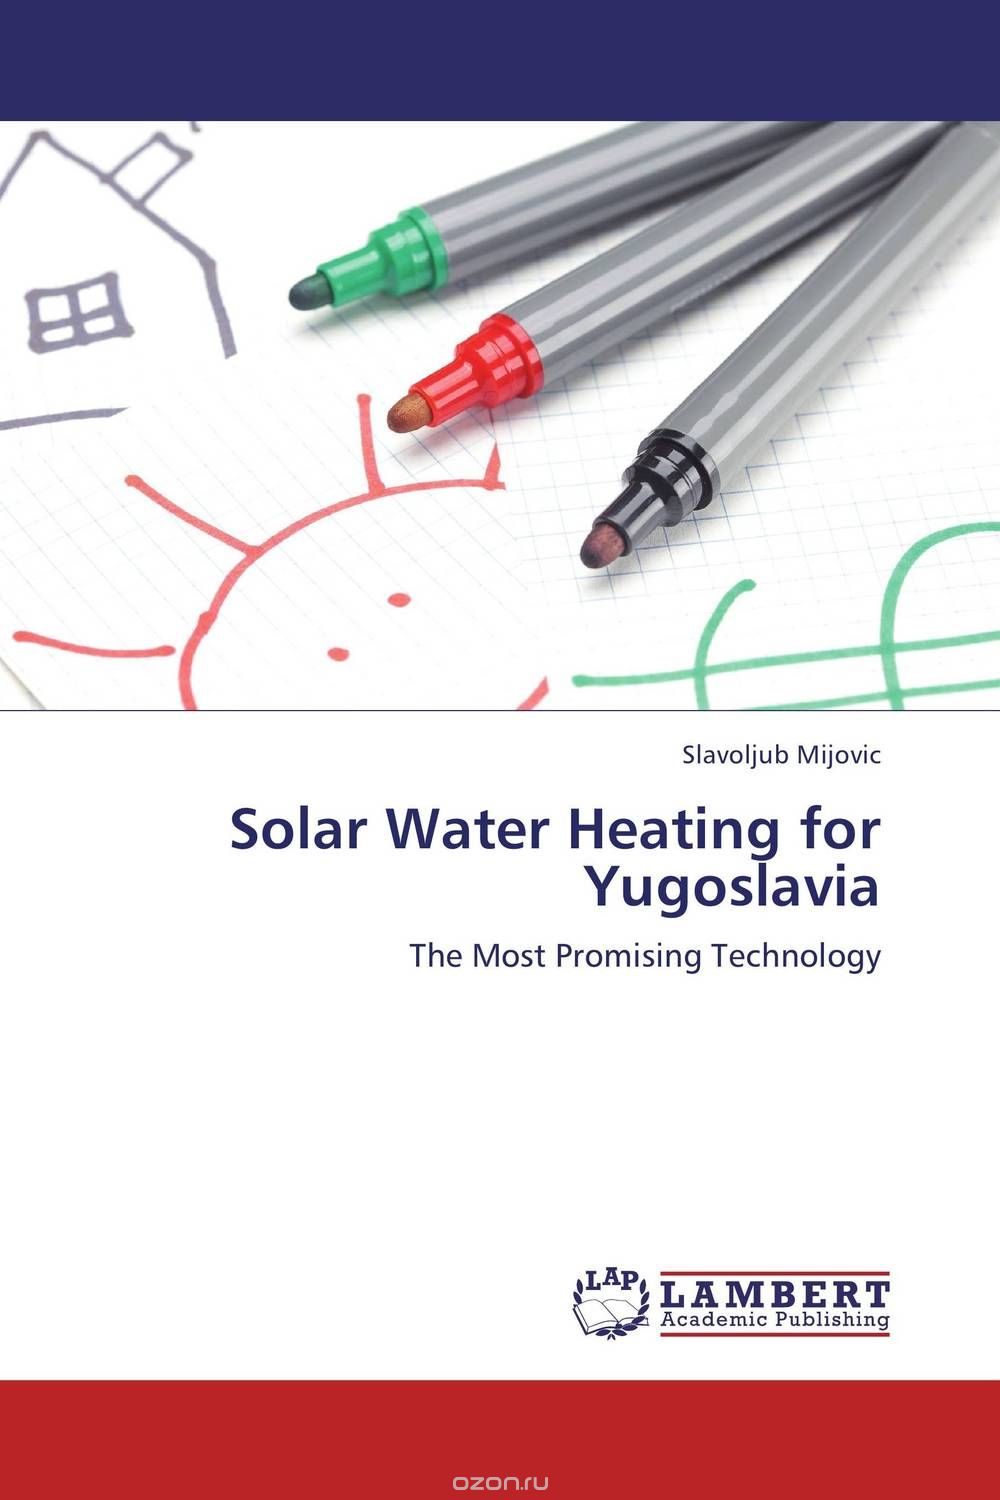 Скачать книгу "Solar Water Heating for Yugoslavia"